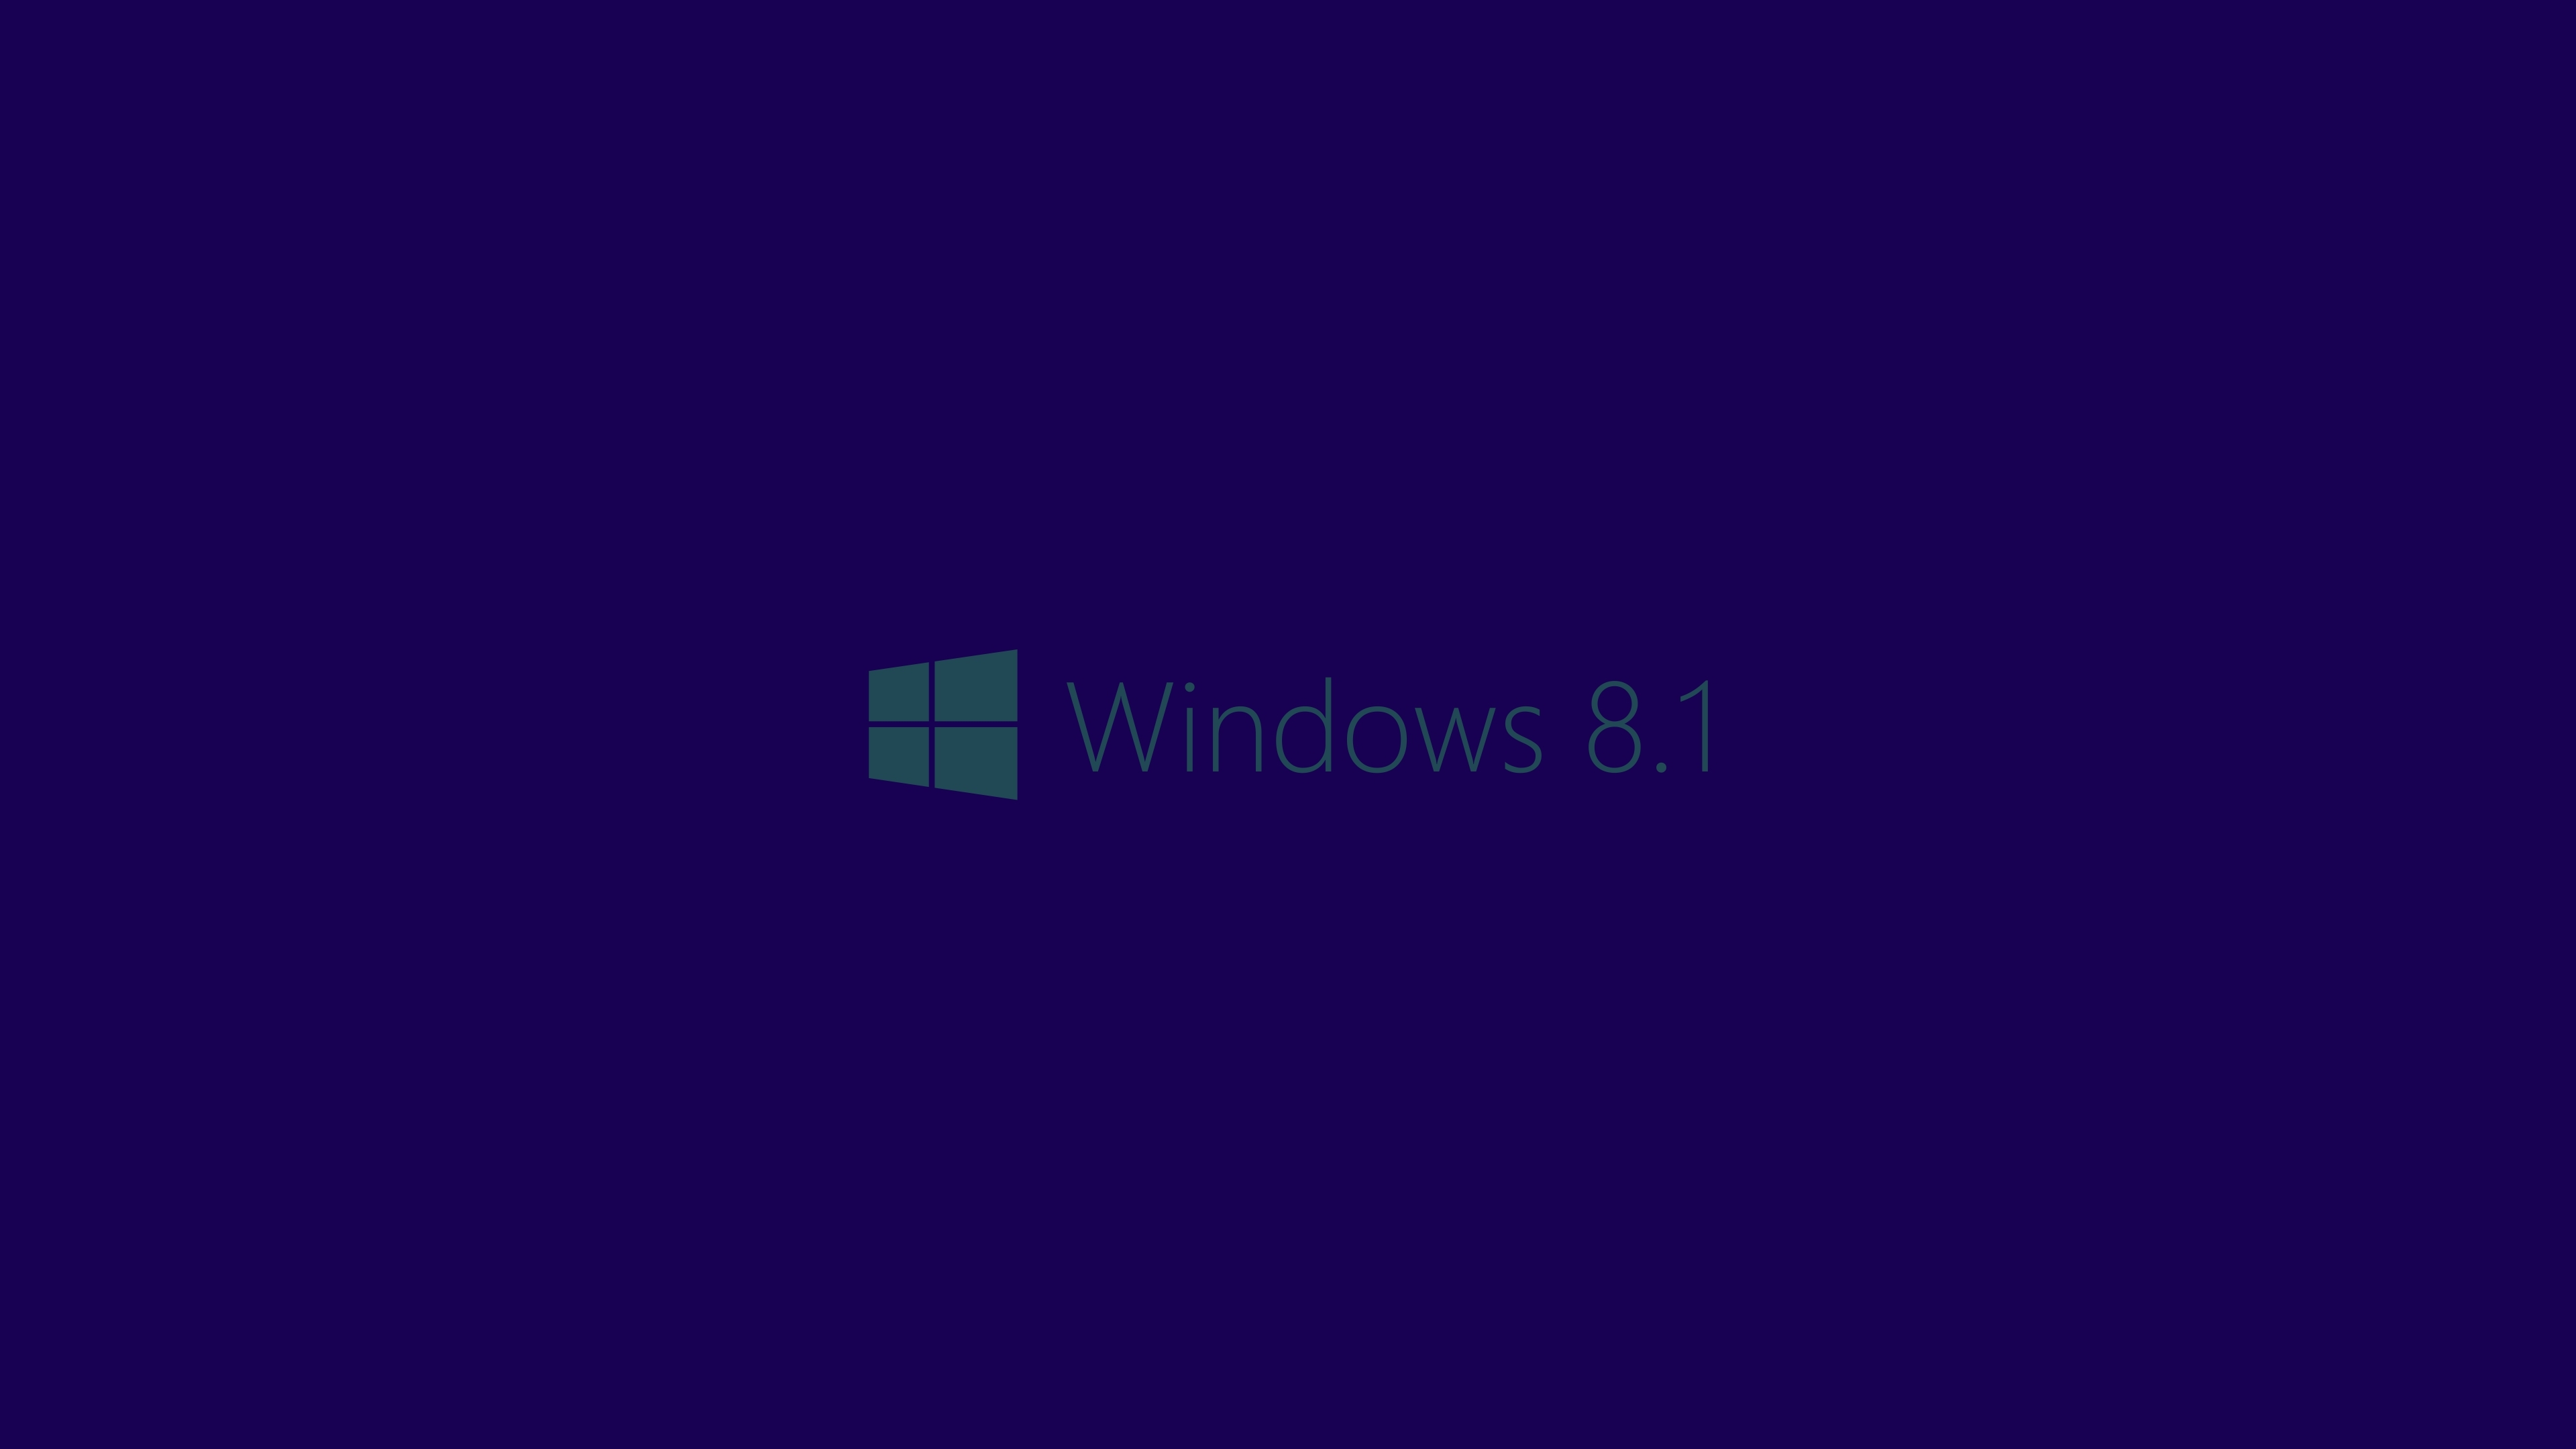 sfondo di windows 8.1,blu,viola,nero,viola,blu cobalto